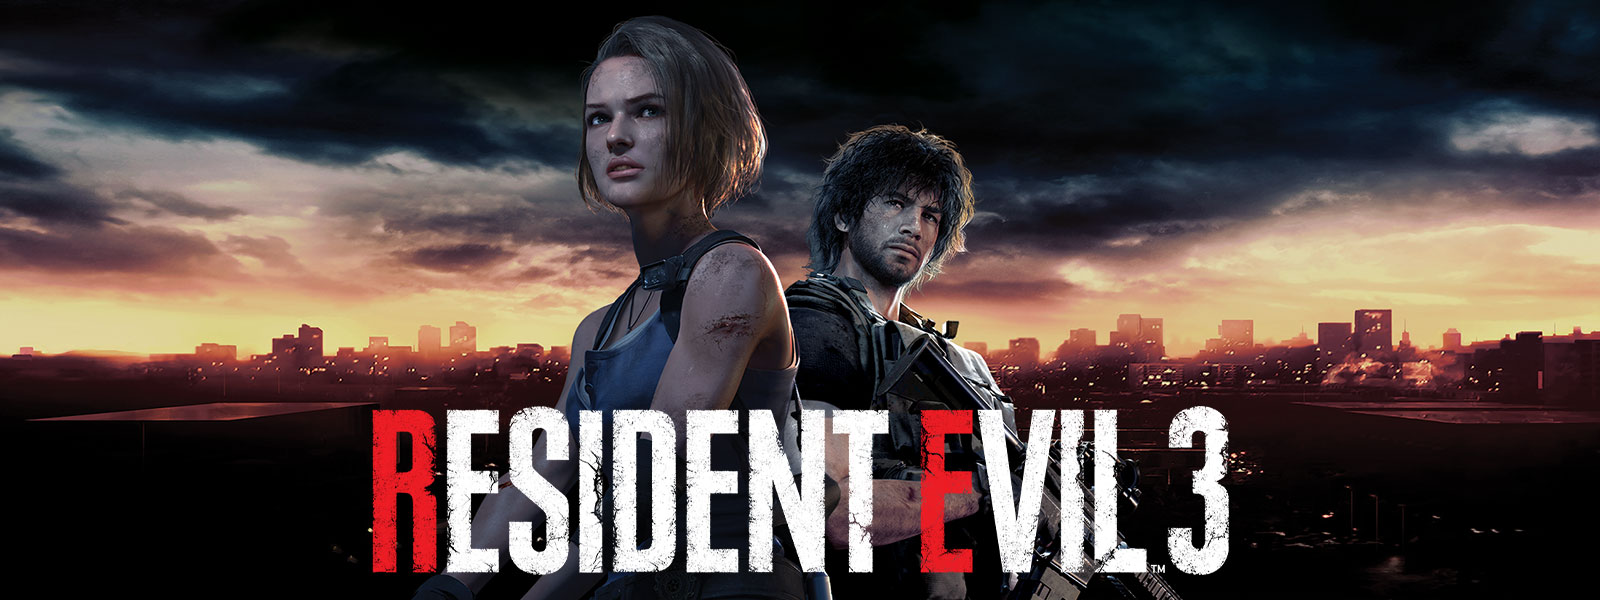 Resident Evil 3, Jill Valentine és Carlos Oliveira Raccoon City látképe előtt áll